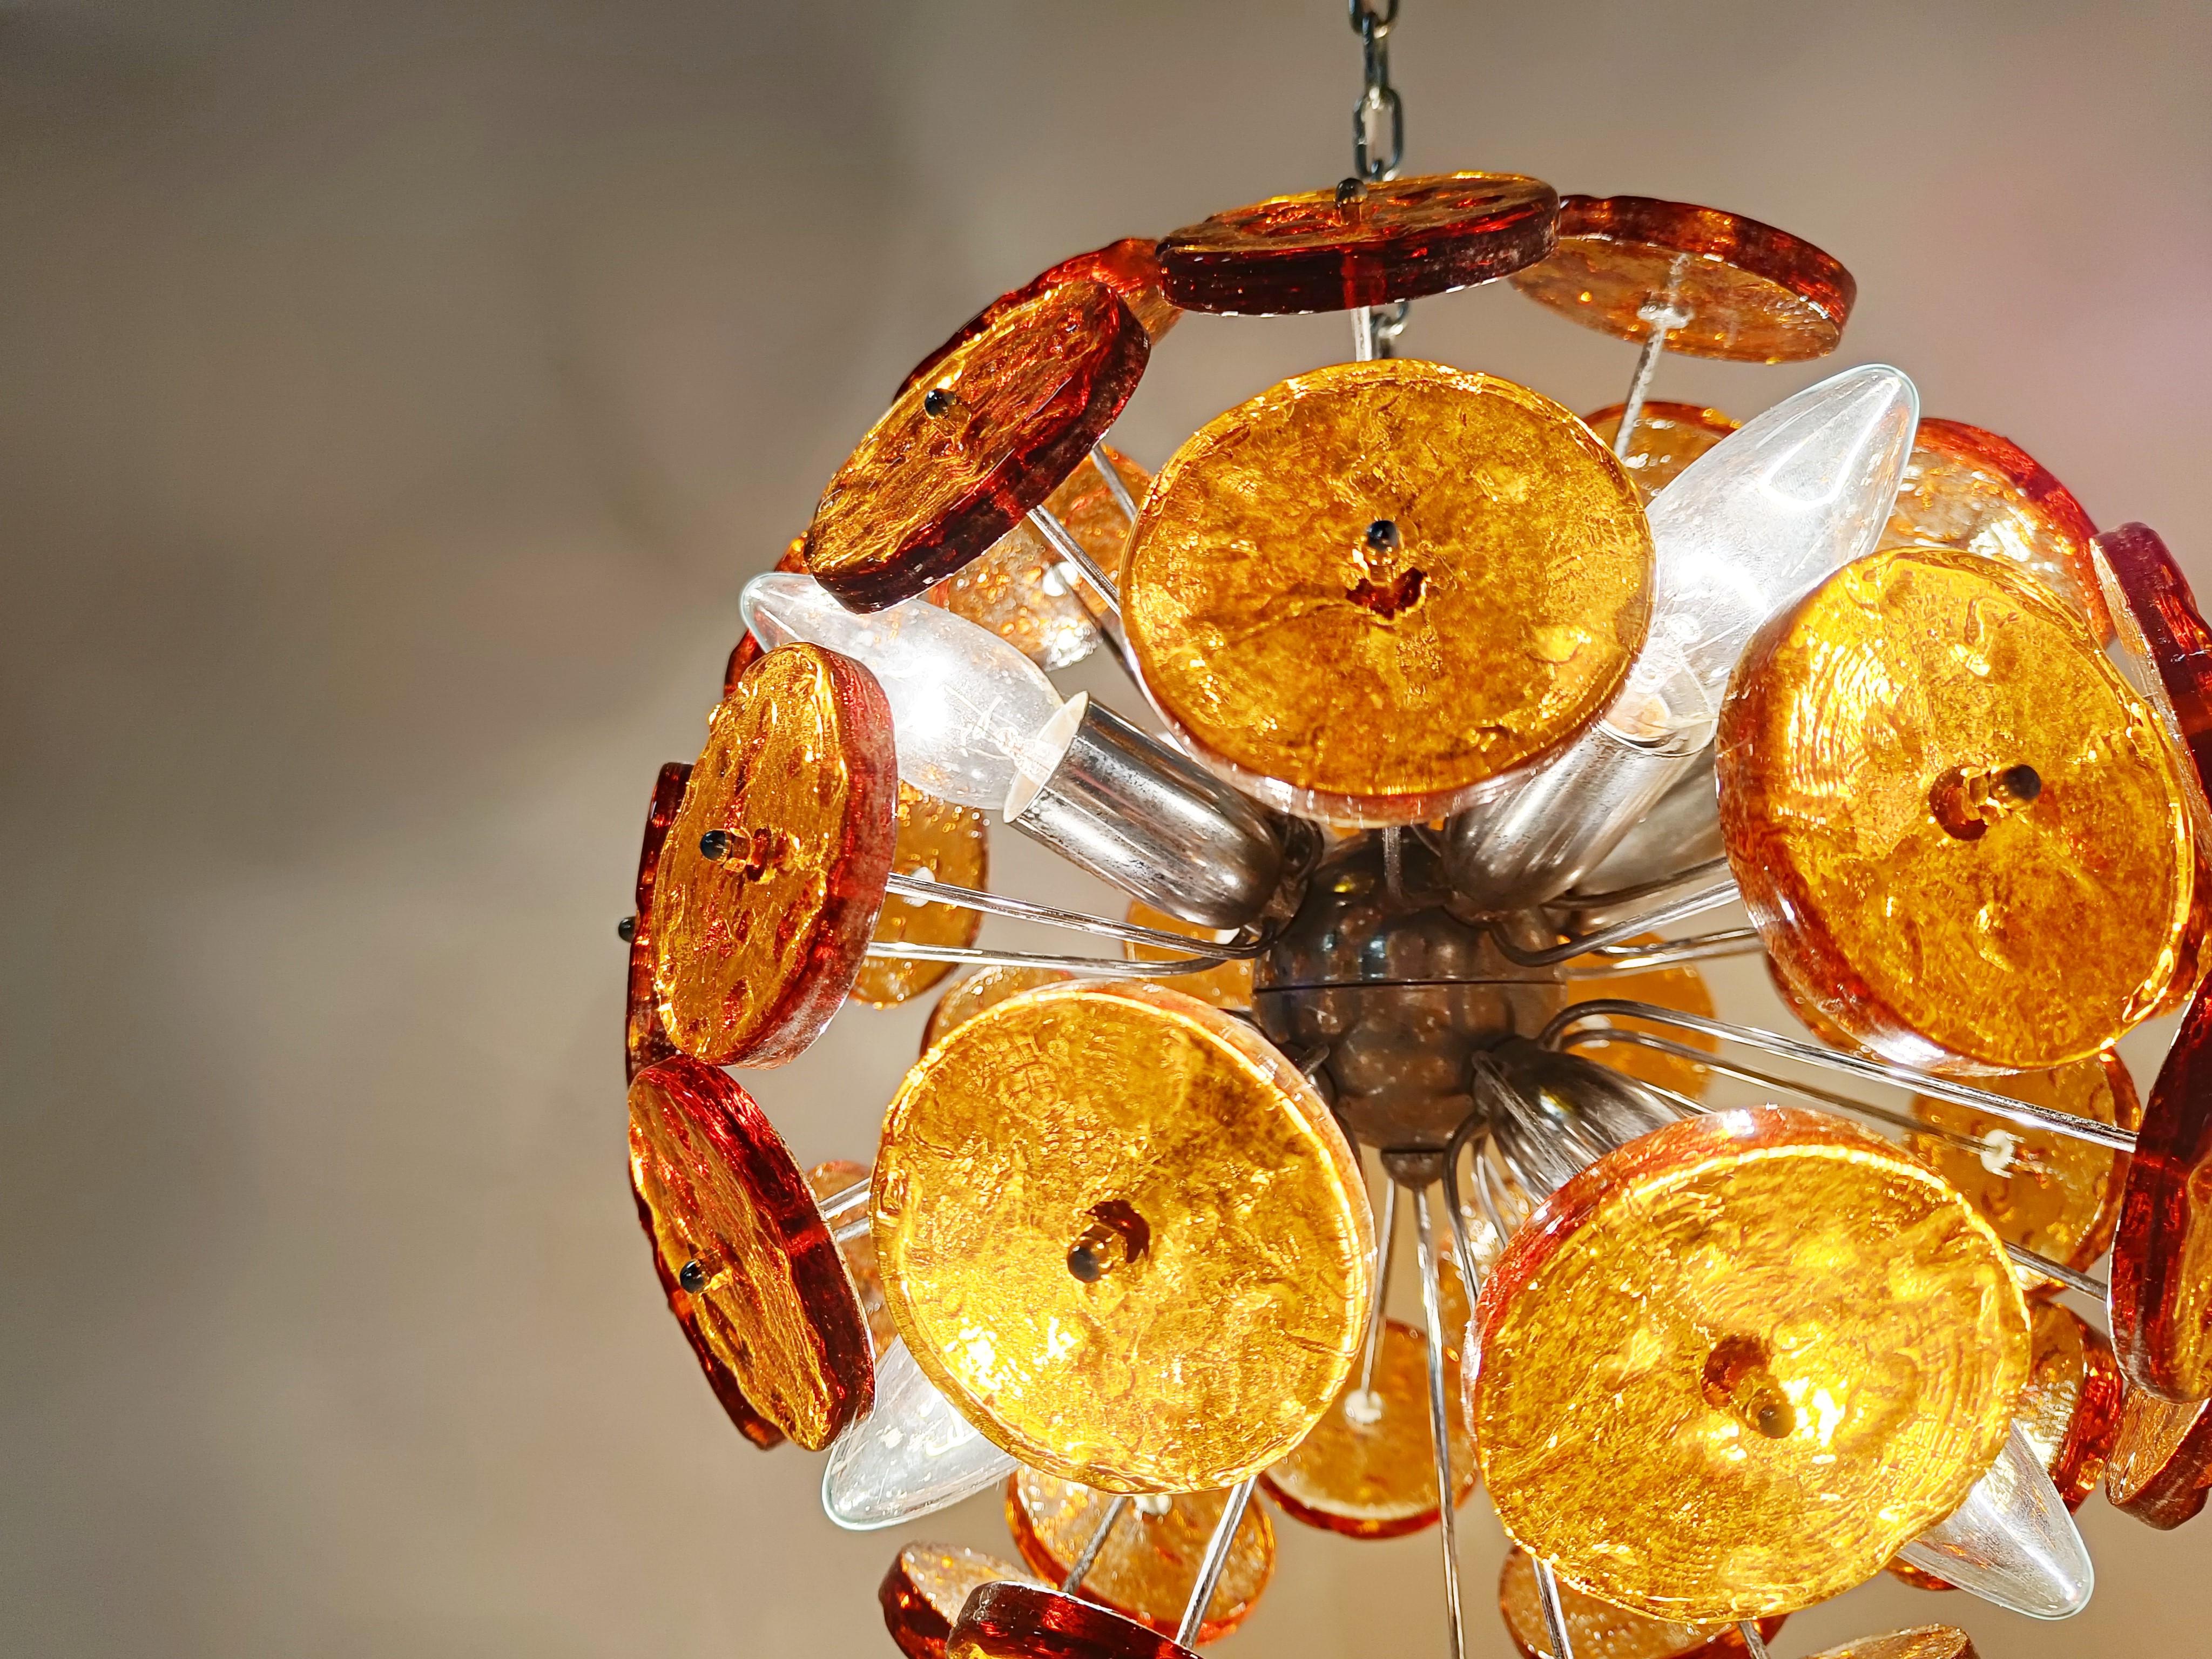 Magnifique lustre en forme de Sputnik avec des disques en verre Murano de couleur marron/ambre montés sur une monture chromée.

Une fois allumé, ce magnifique lustre émet une lumière diffuse et chaleureuse.

Testé et prêt à être utilisé.

Nous